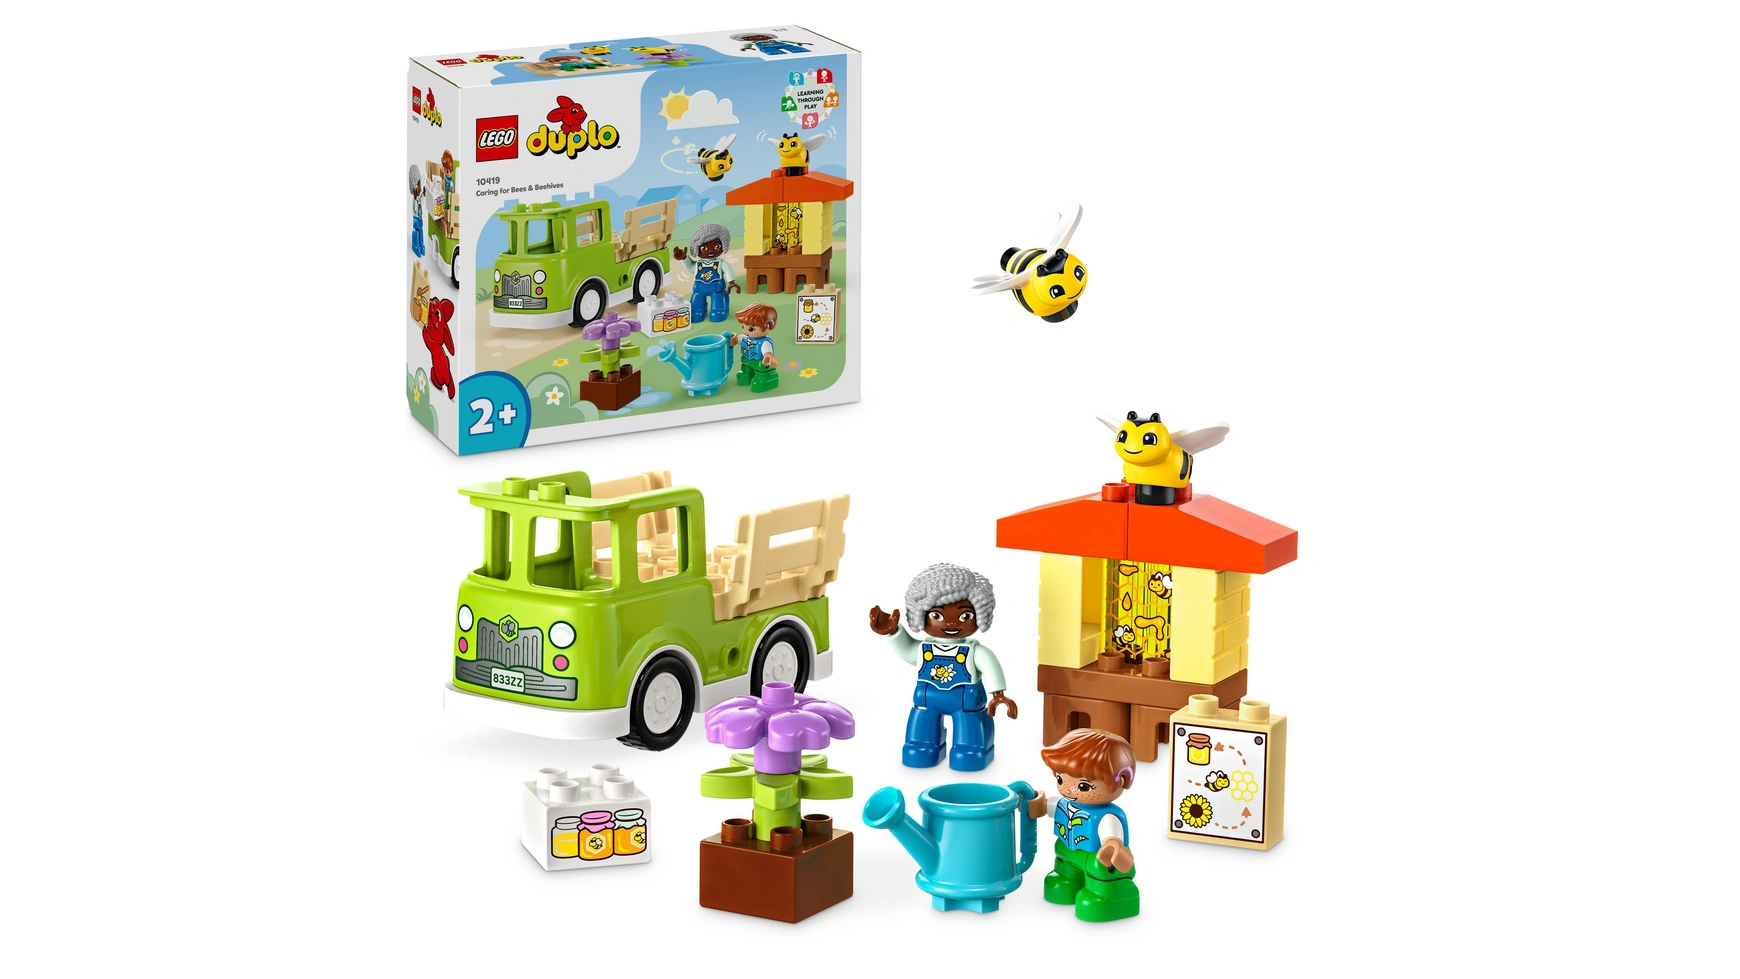 Lego DUPLO Town Пчеловодство и ульи, игрушки для животных для детей от 2 лет lego duplo town обучающая игрушка грузовик abc с игрушечным грузовиком